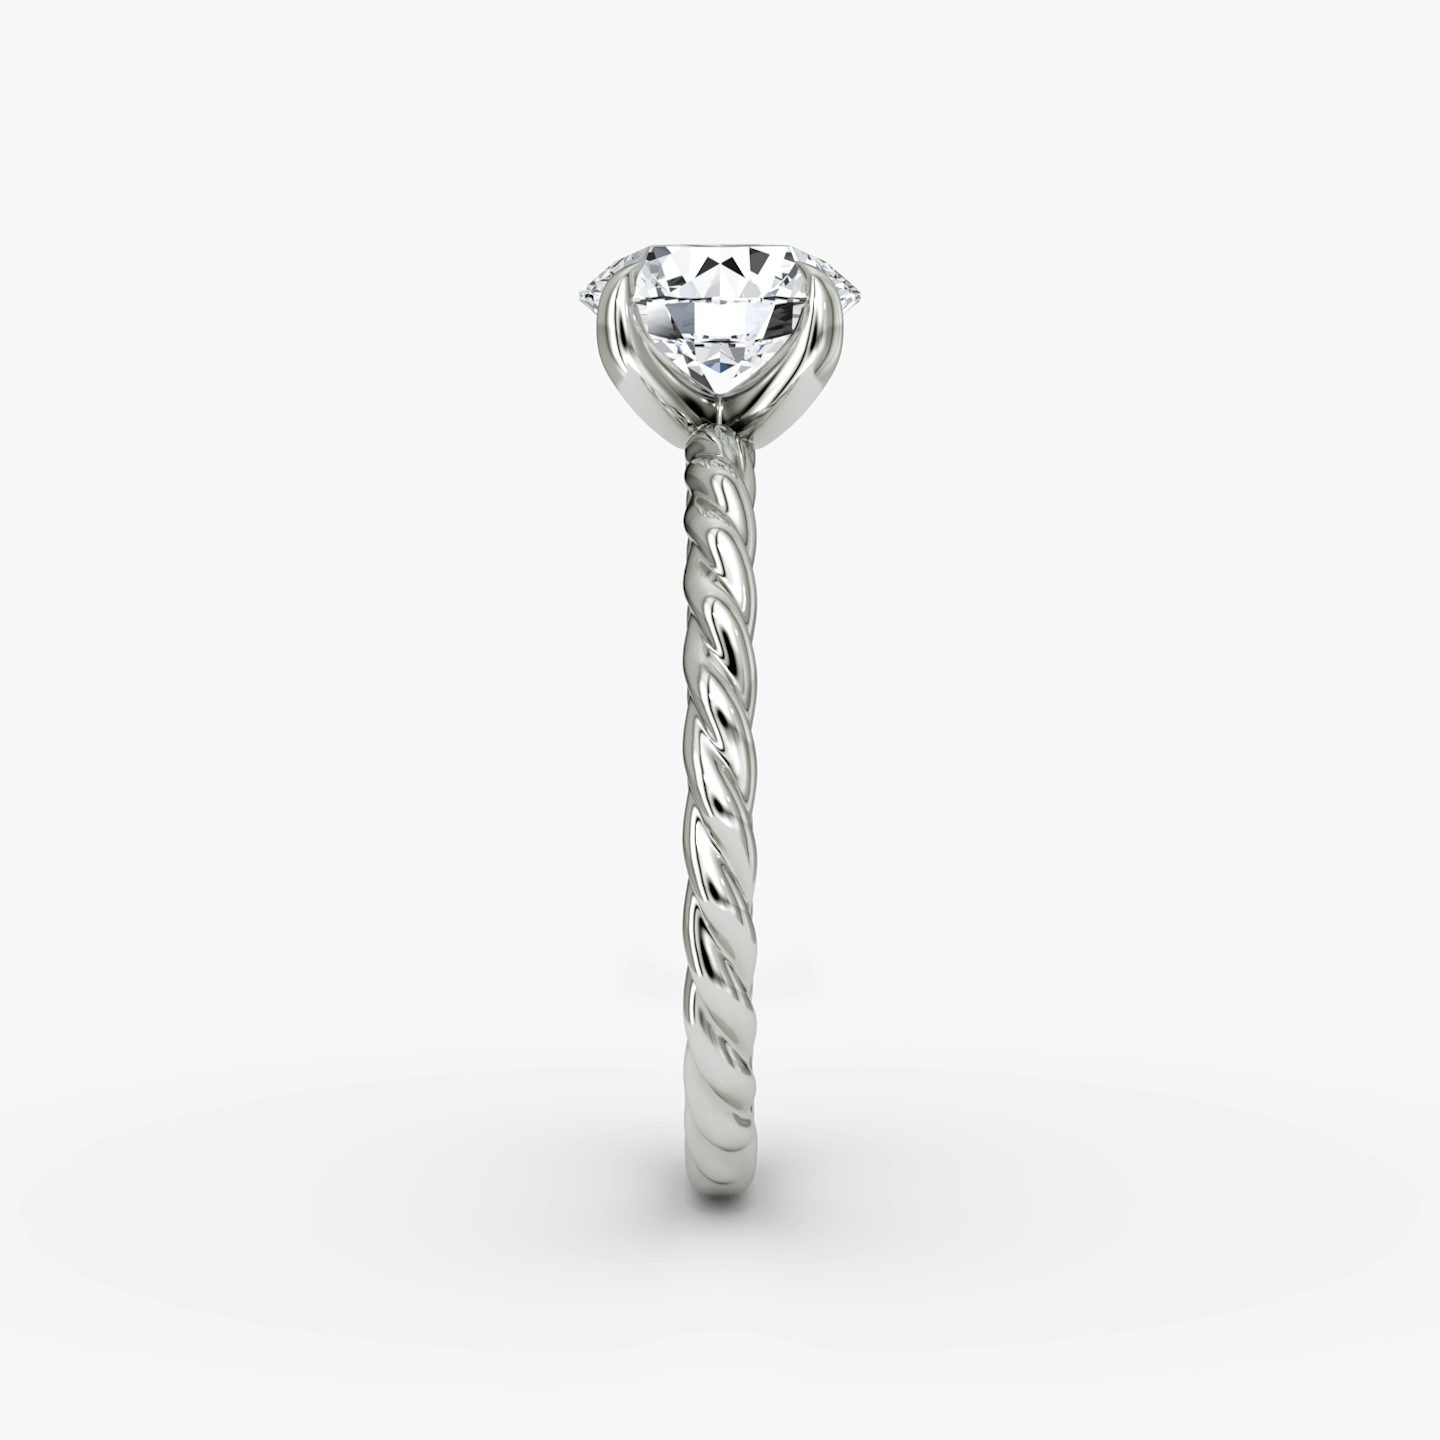 The Classic Rope | Round Brilliant | Platinum | Carat weight: 2 | Diamond orientation: vertical